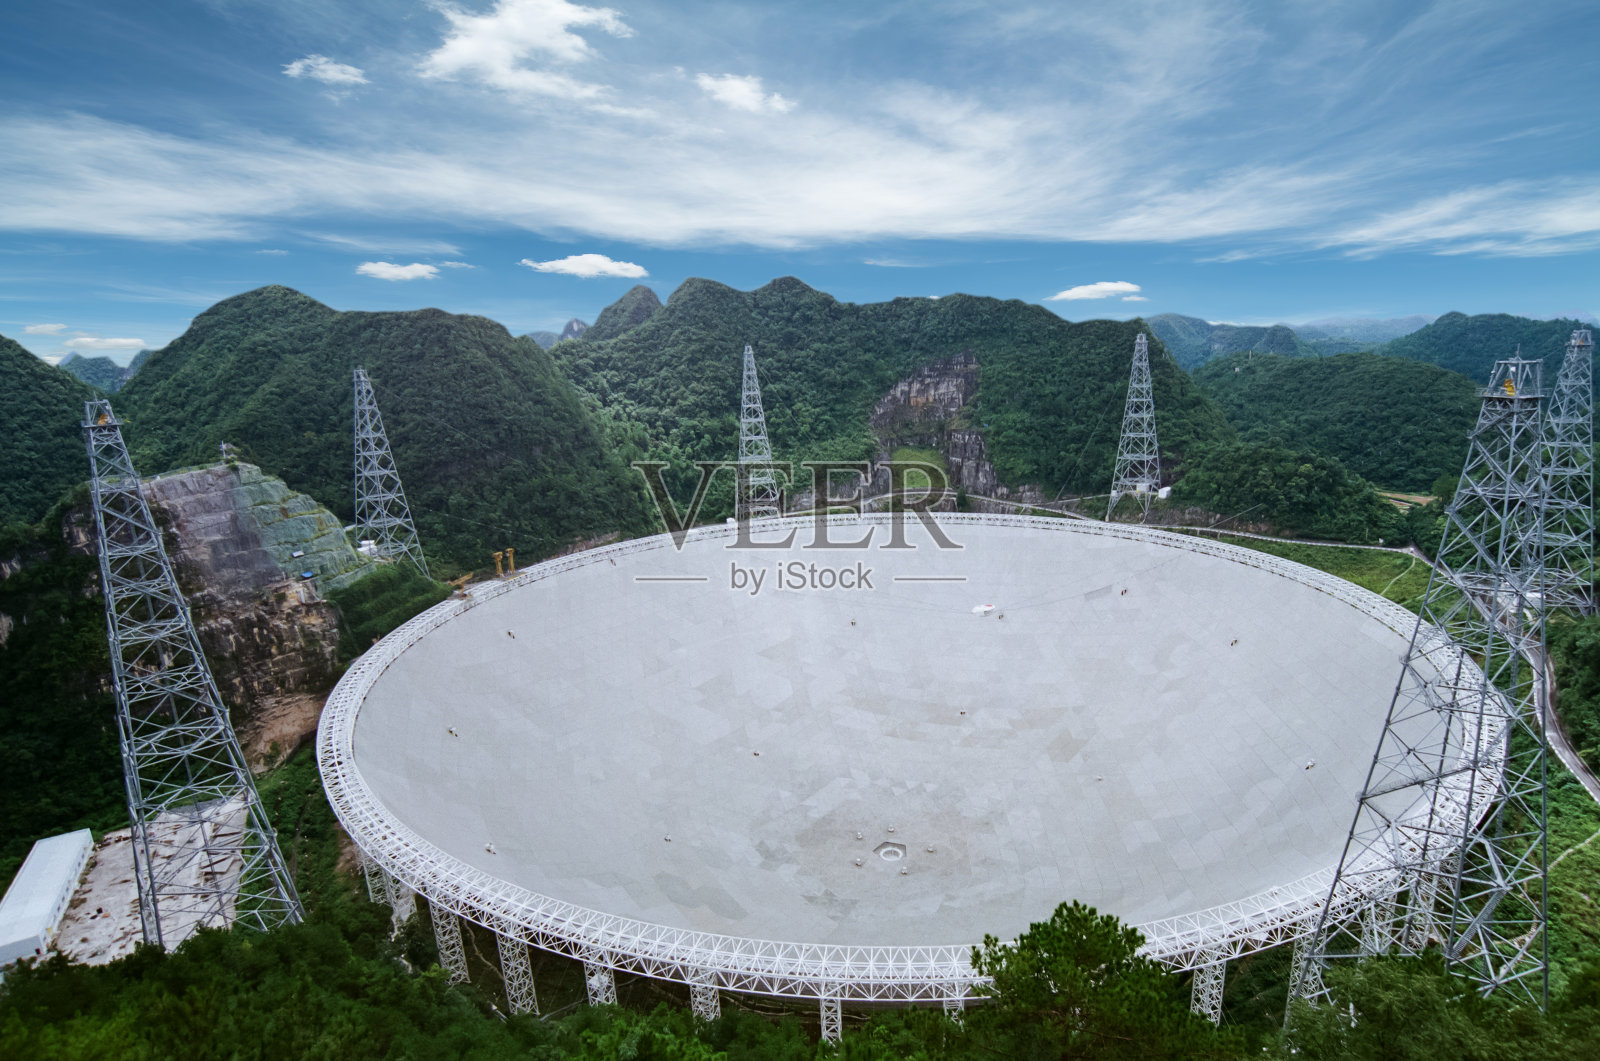 500米口径球面射电望远镜照片摄影图片